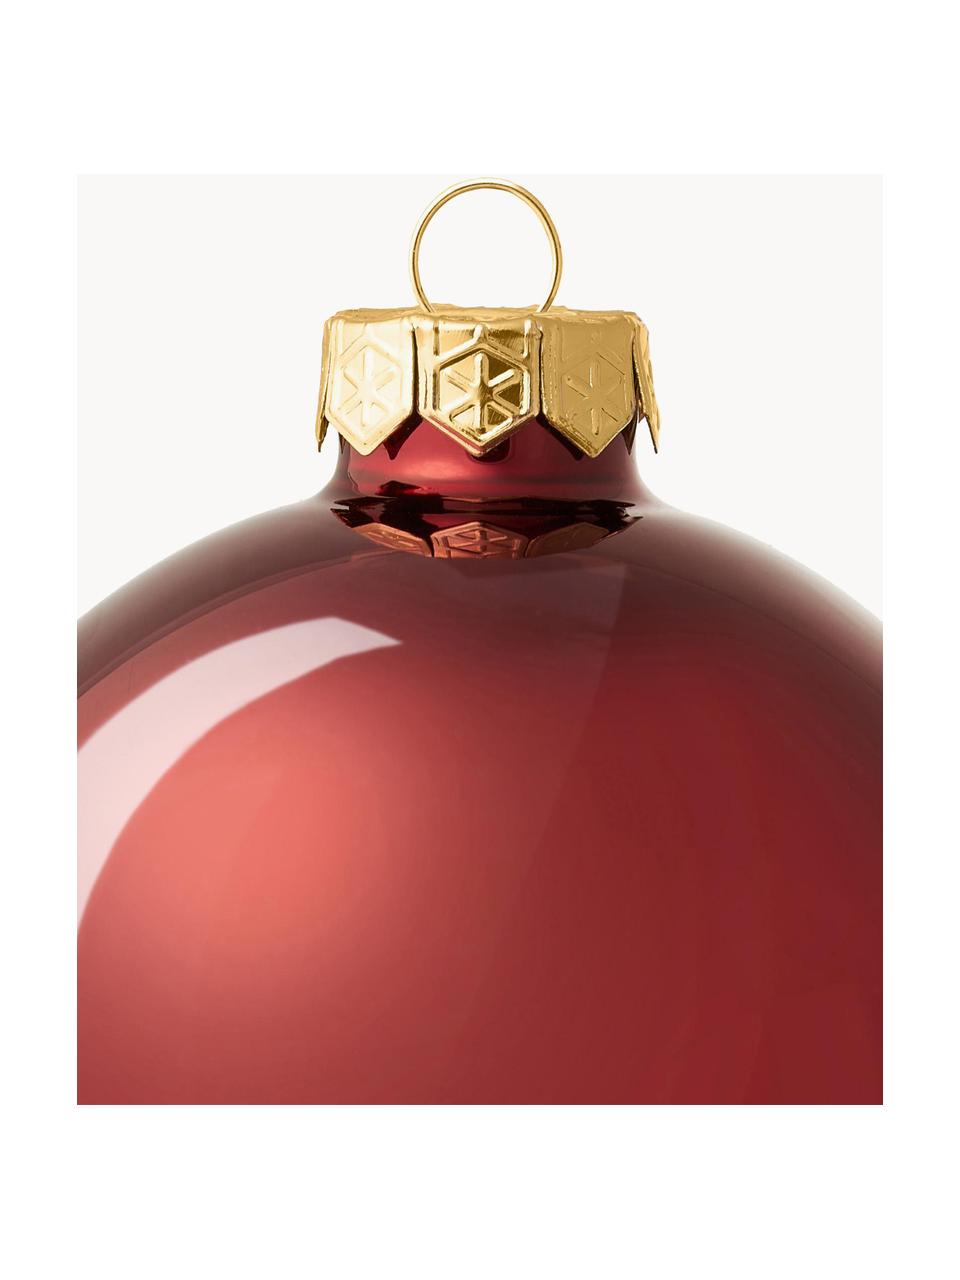 Bolas de Navidad Evergreen, tamaños diferentes, Rojo oscuro, Ø 4 cm, 16 uds.